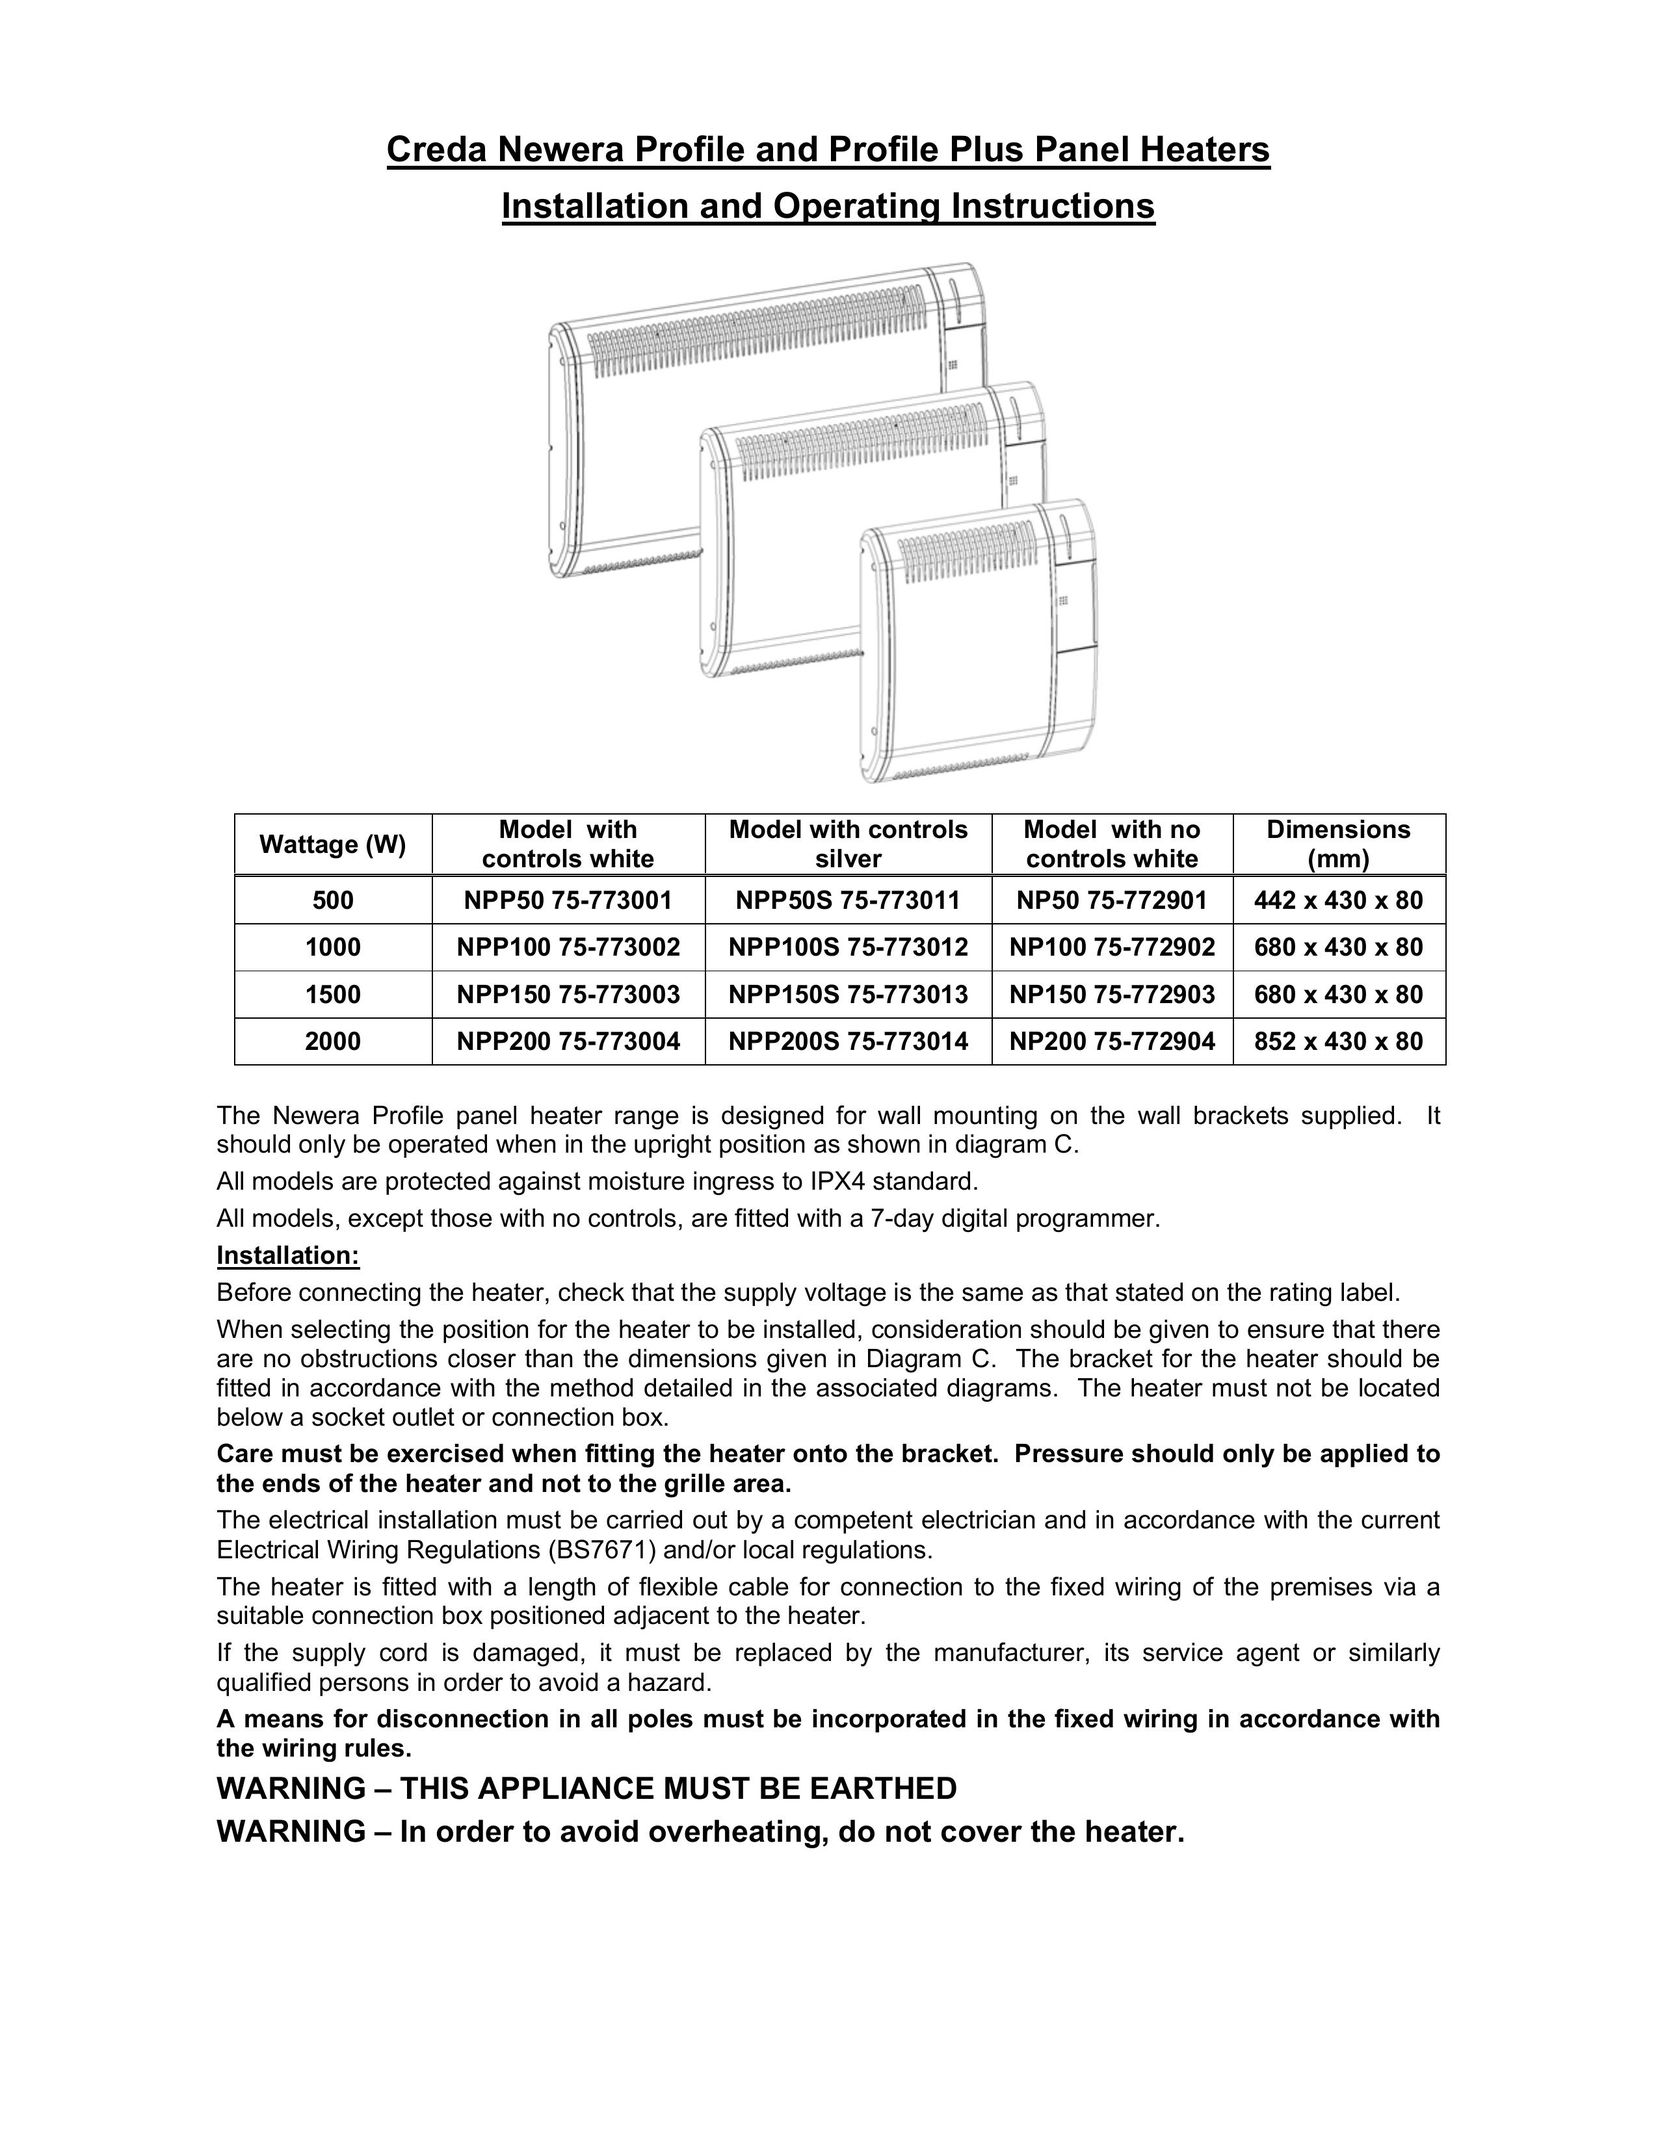 Creda NPP100 75-773002 Air Conditioner User Manual